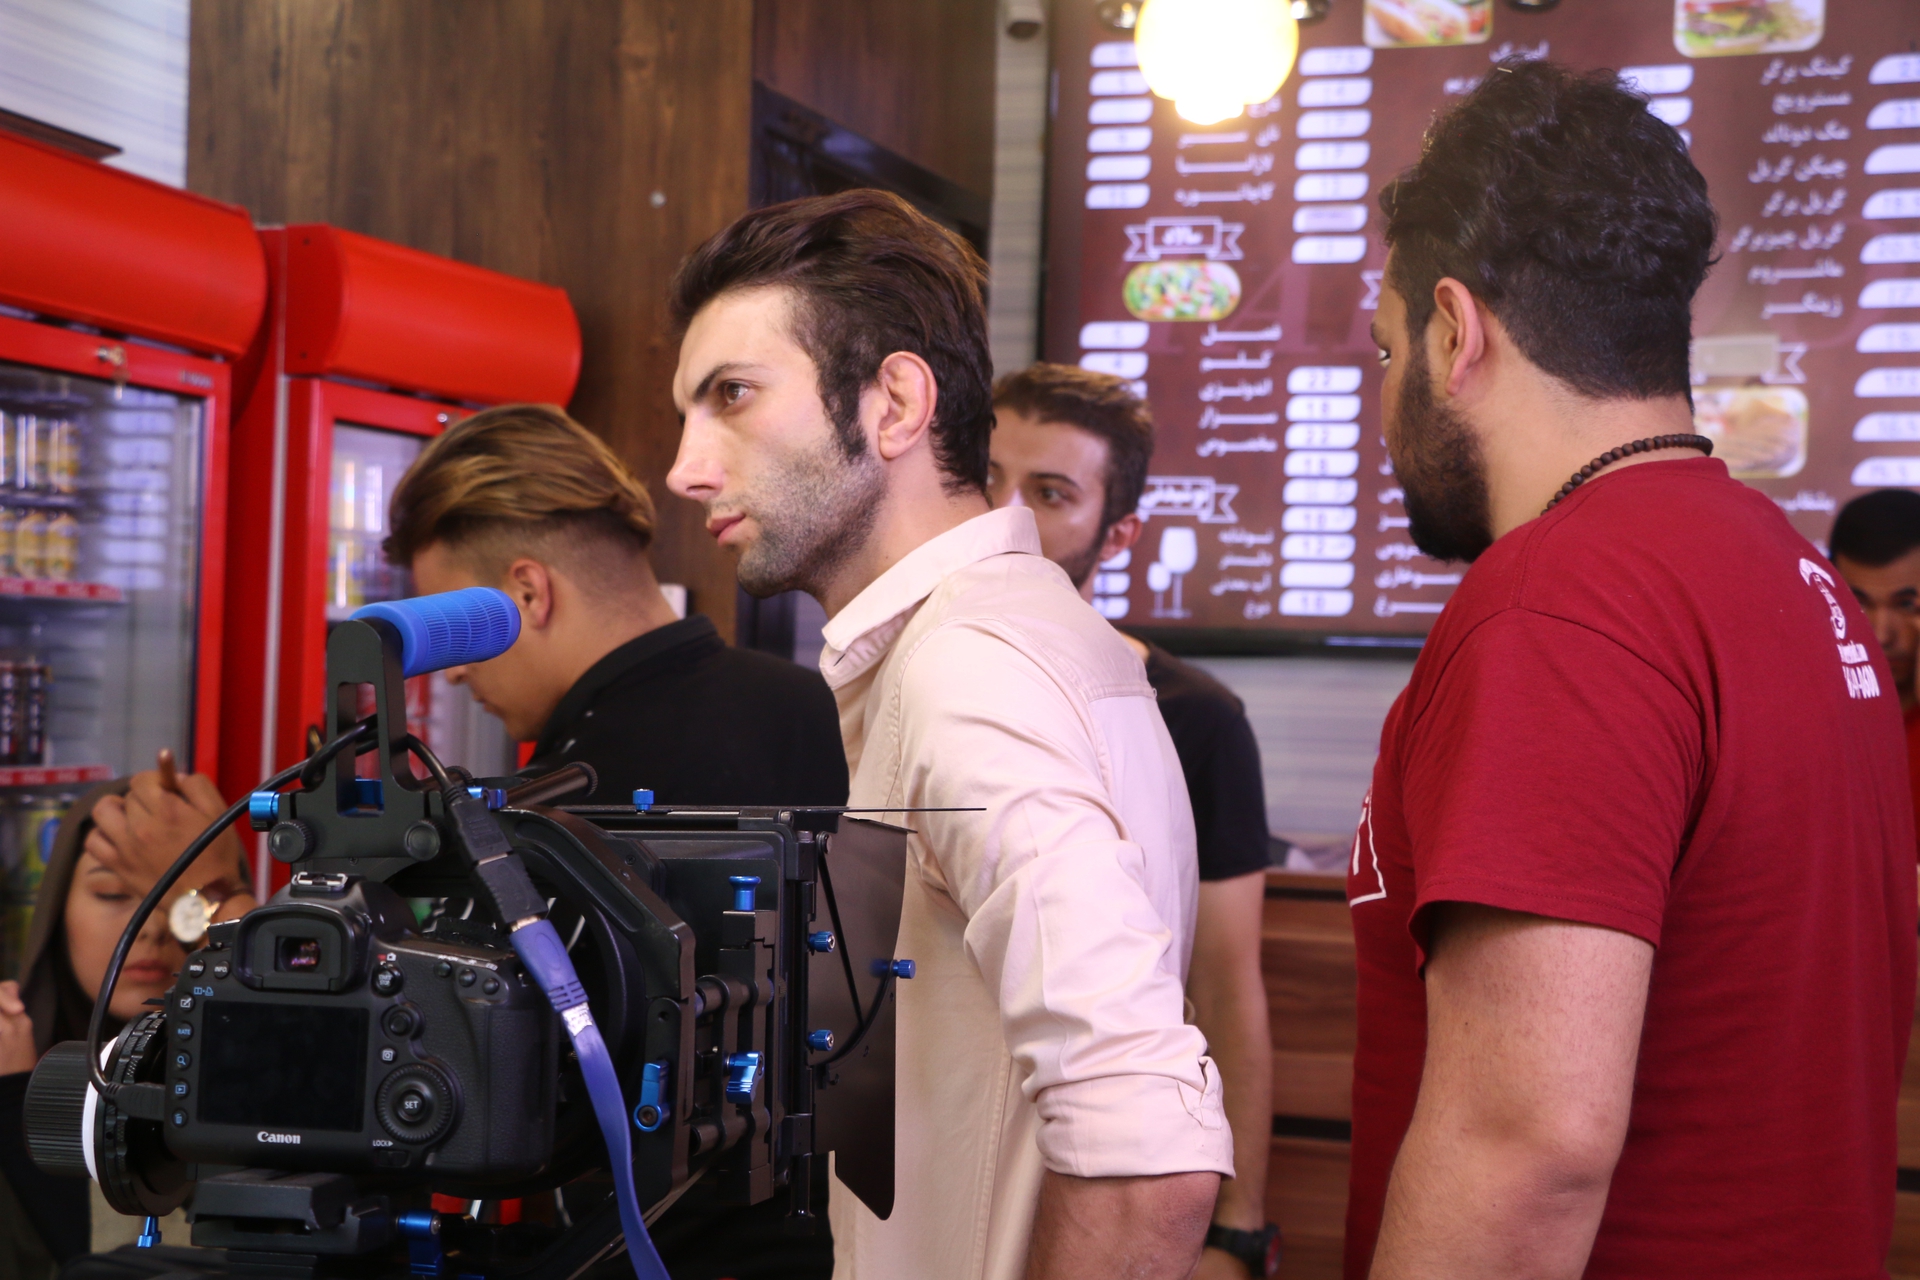 تصویری از نوید اسماعیلی، کارگردان و بازیگر سینما و تلویزیون در حال بازیگری سر صحنه یکی از آثارش